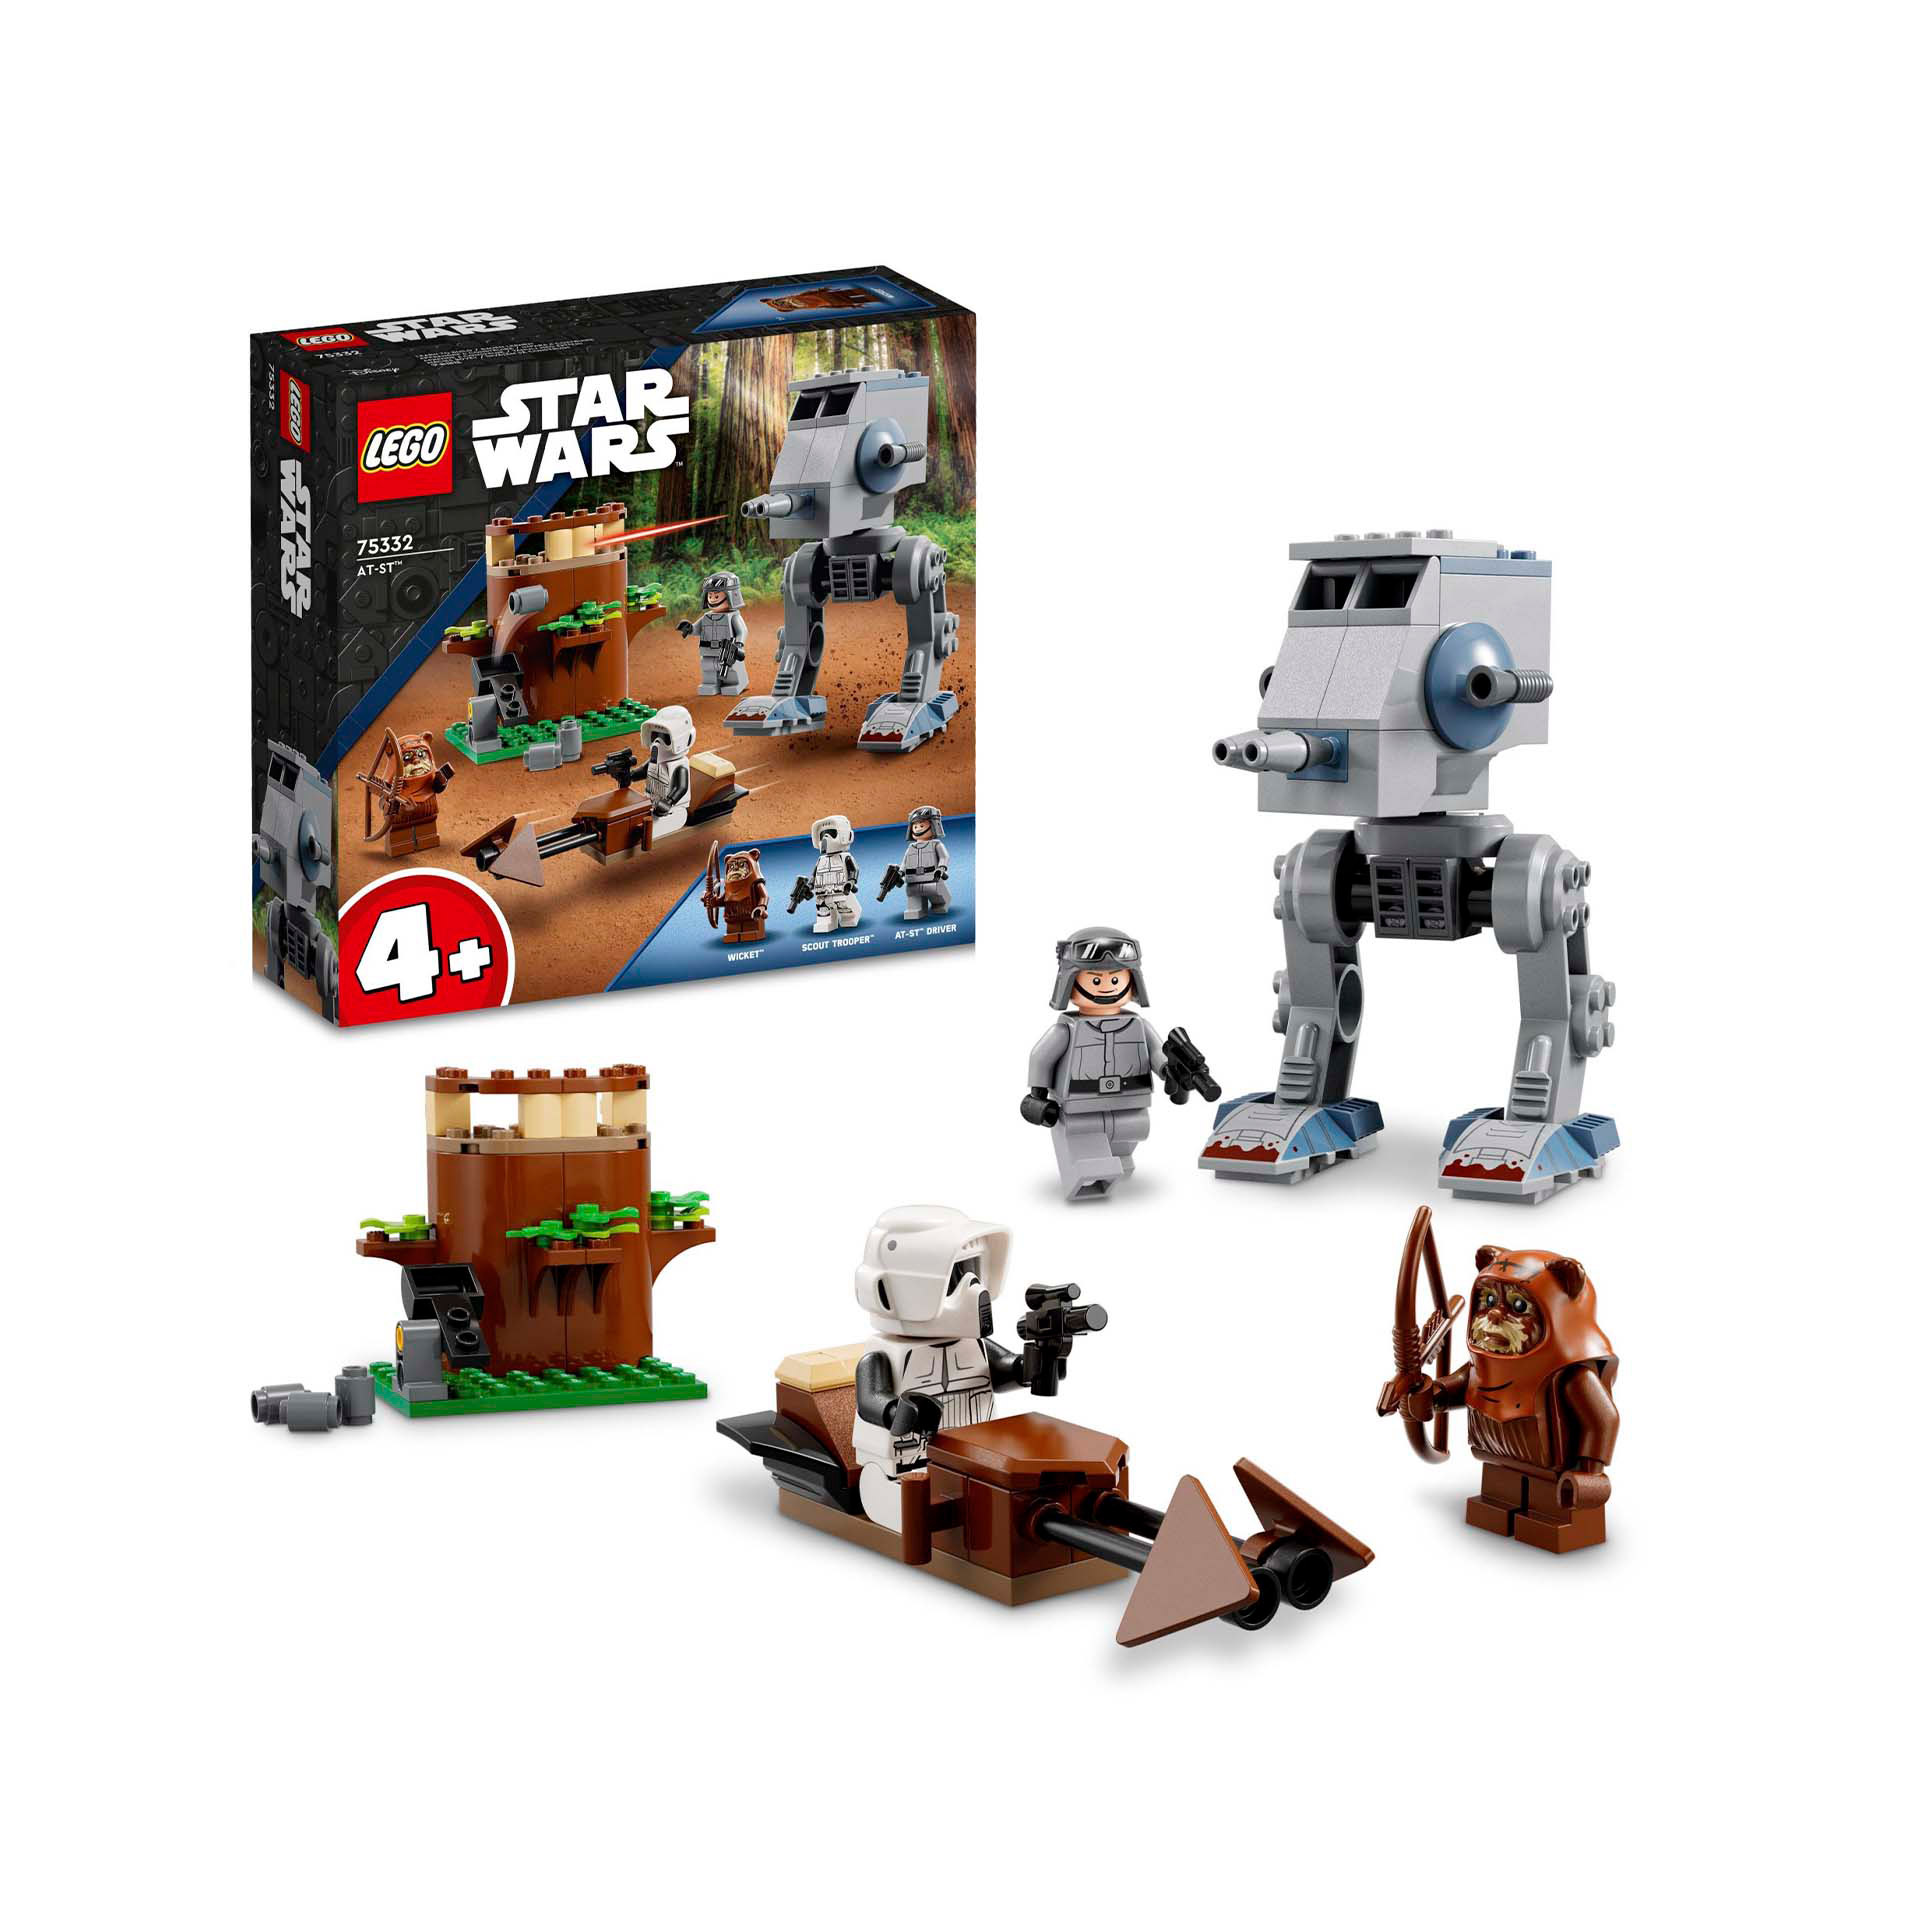 LEGO 75332 Star Wars AT-ST, Modellino da Costruire per Bambini in Età Prescolare 75332, , large